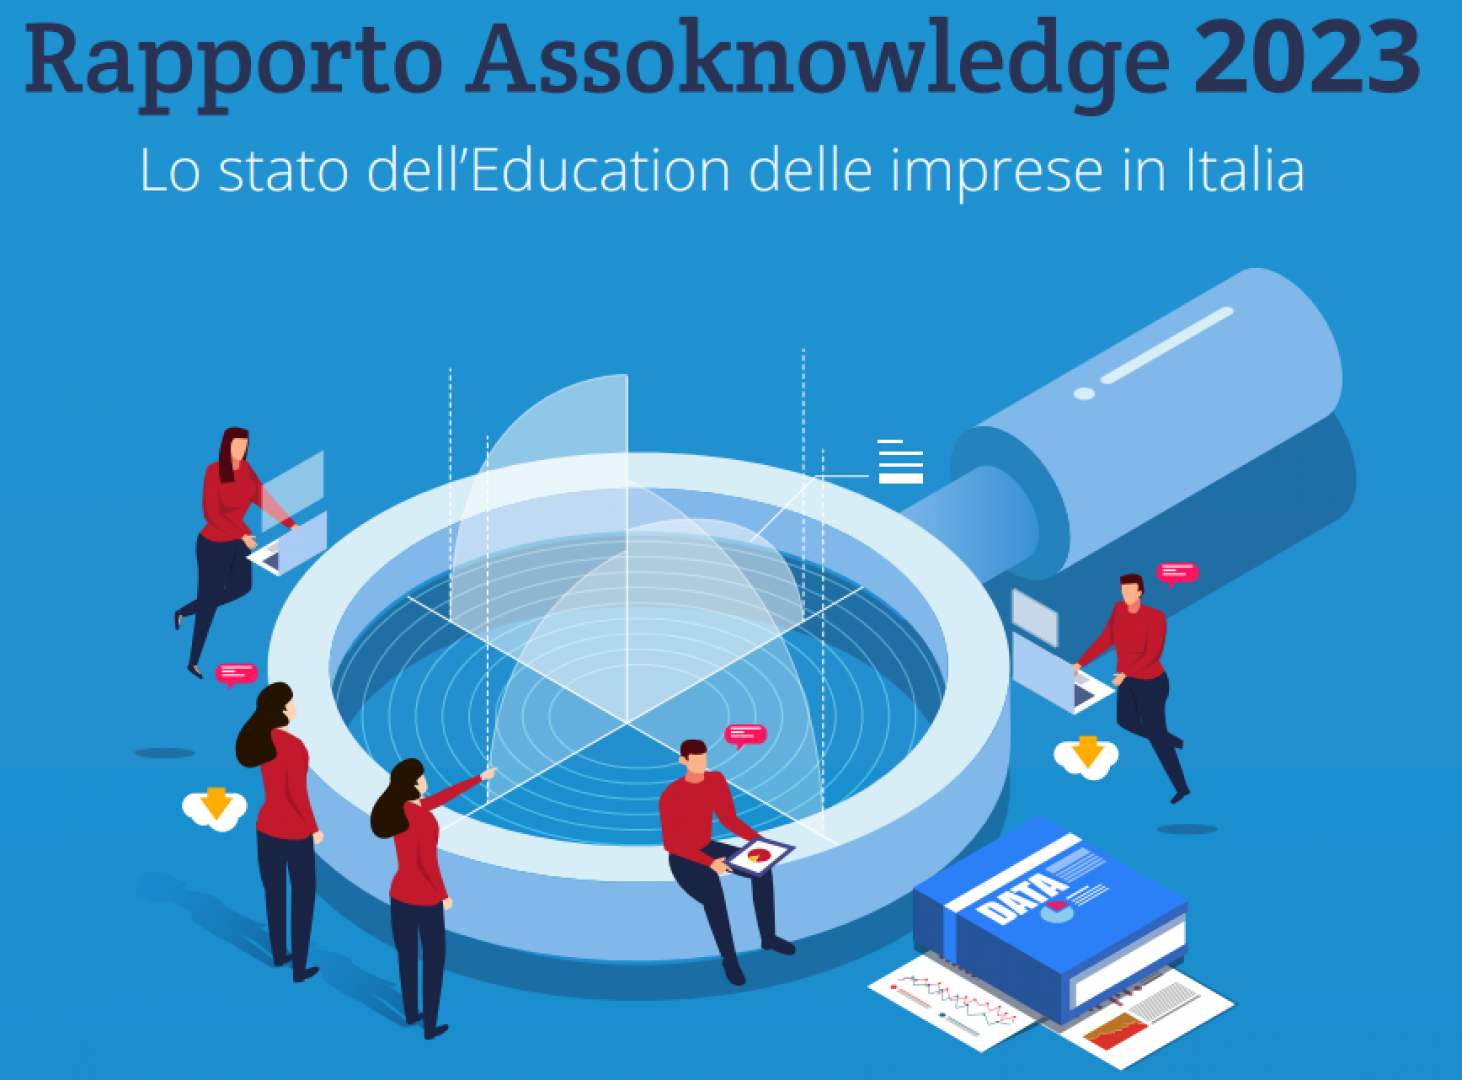 Presentazione del Rapporto Assoknowledge 2023 al Ministero per le Imprese e il Made in Italy